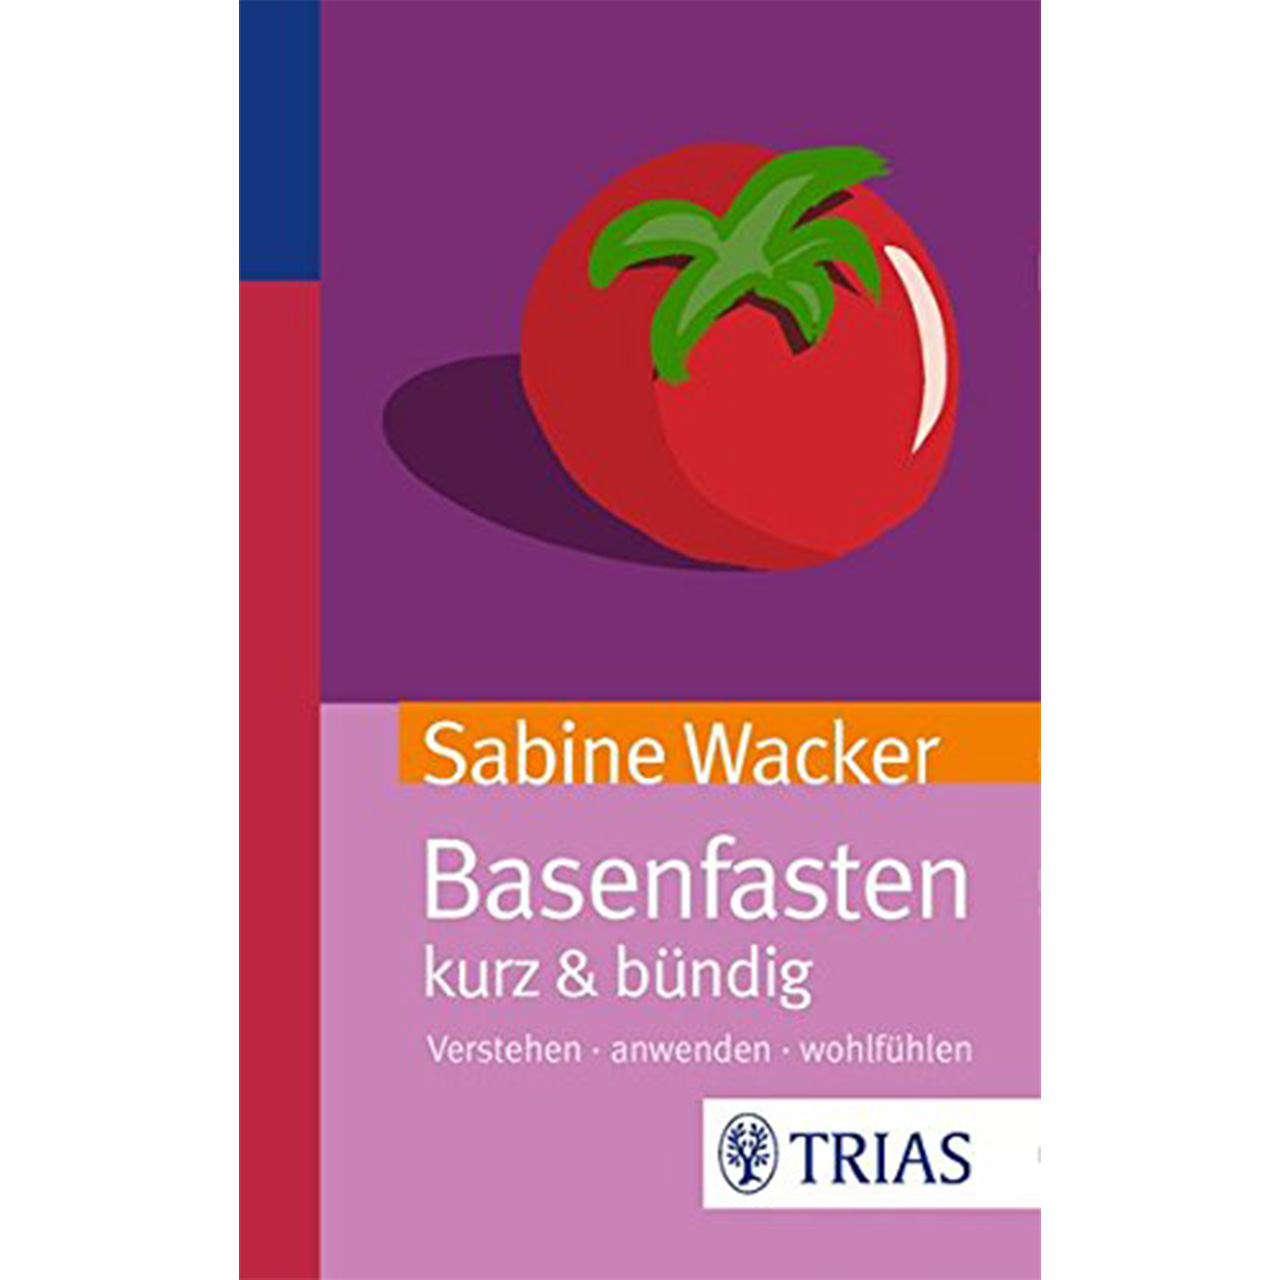 basenfasten kurz & bündig von Sabine Wacker, TRIAS-Verlag